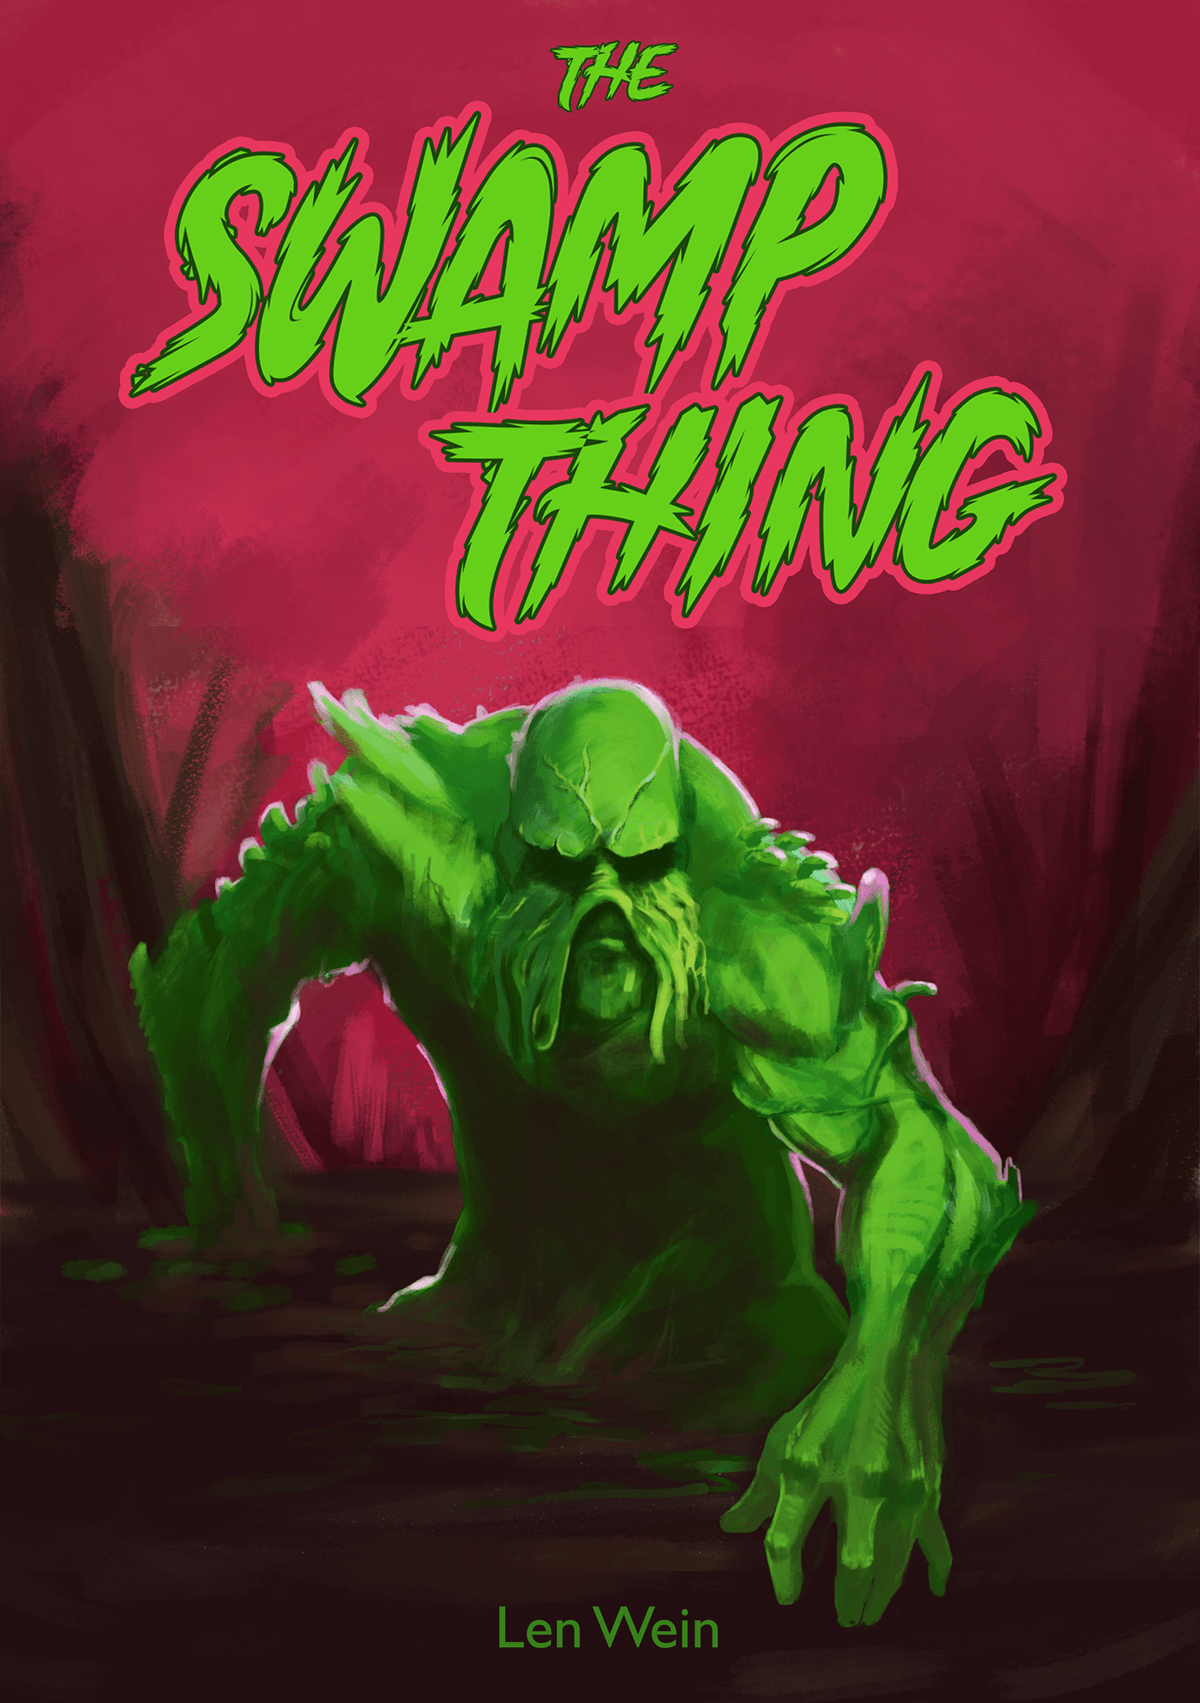 bookcover Capa capa de livro Digital Art  ILLUSTRATION  Livro Monstro do Pântano redesign Swamp Thing